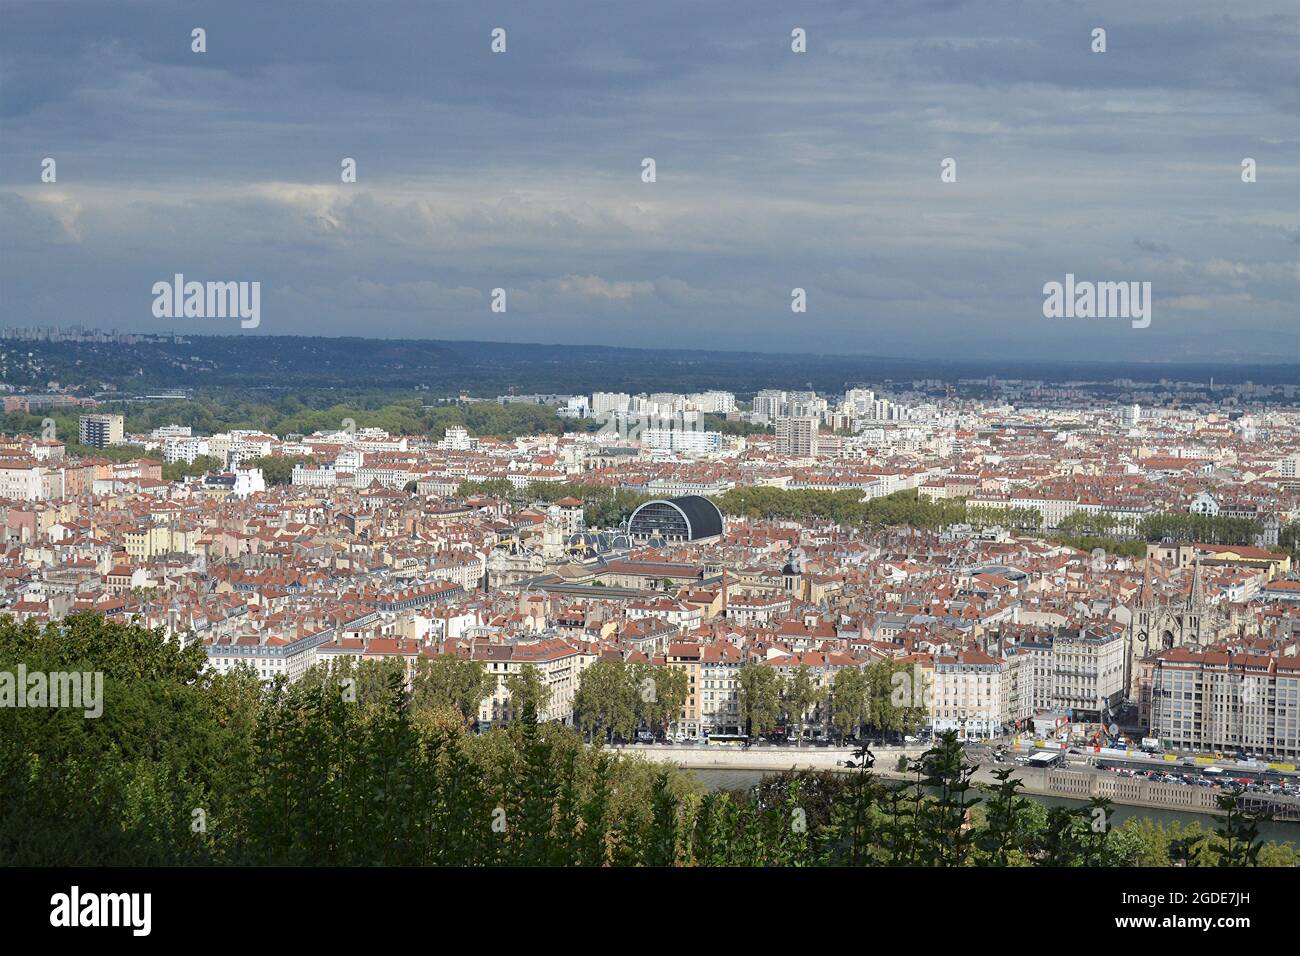 Ville de Lyon en France, vue sur l'opéra depuis la cathédrale de Fourvière Foto Stock